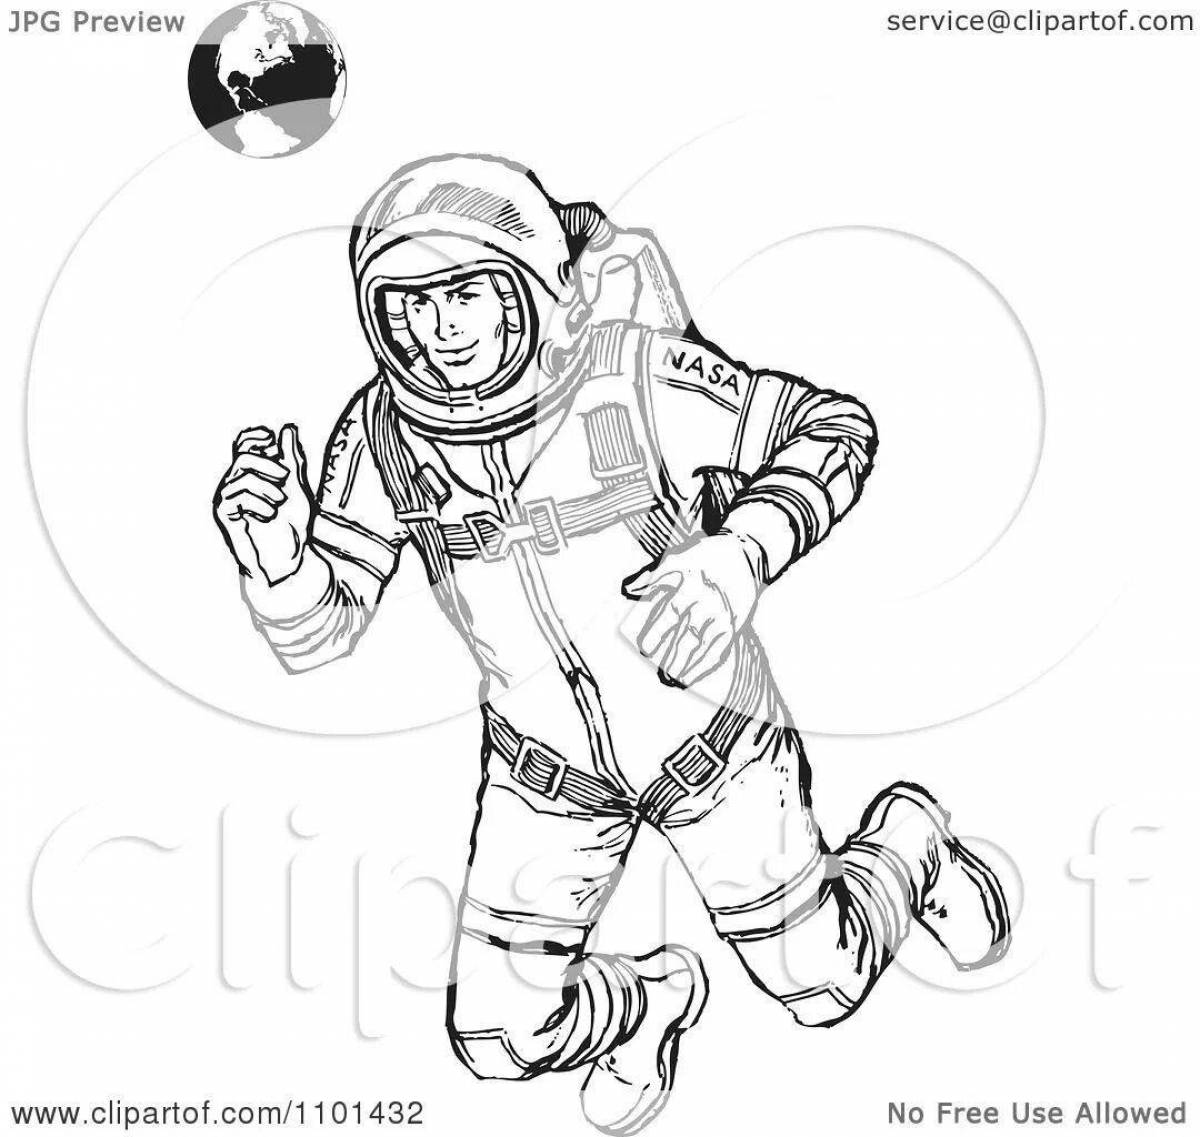 Yuri Gagarin's animated coloring book